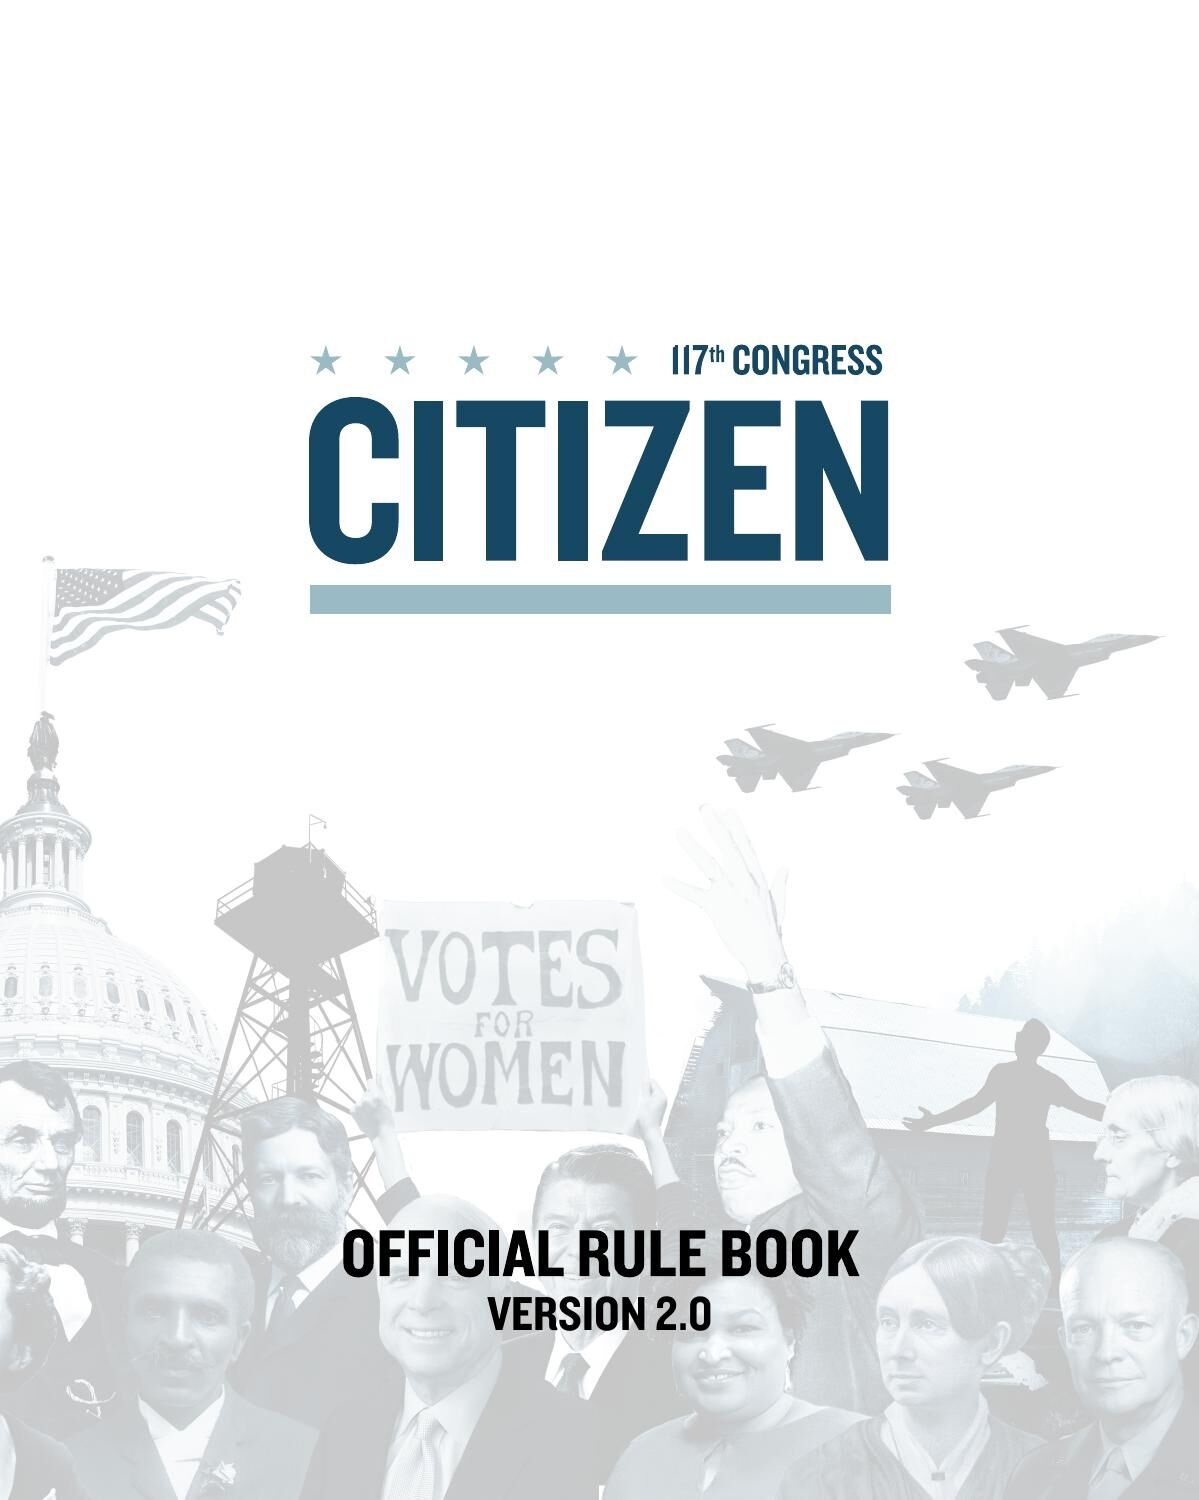 'Citizen' board game rule book